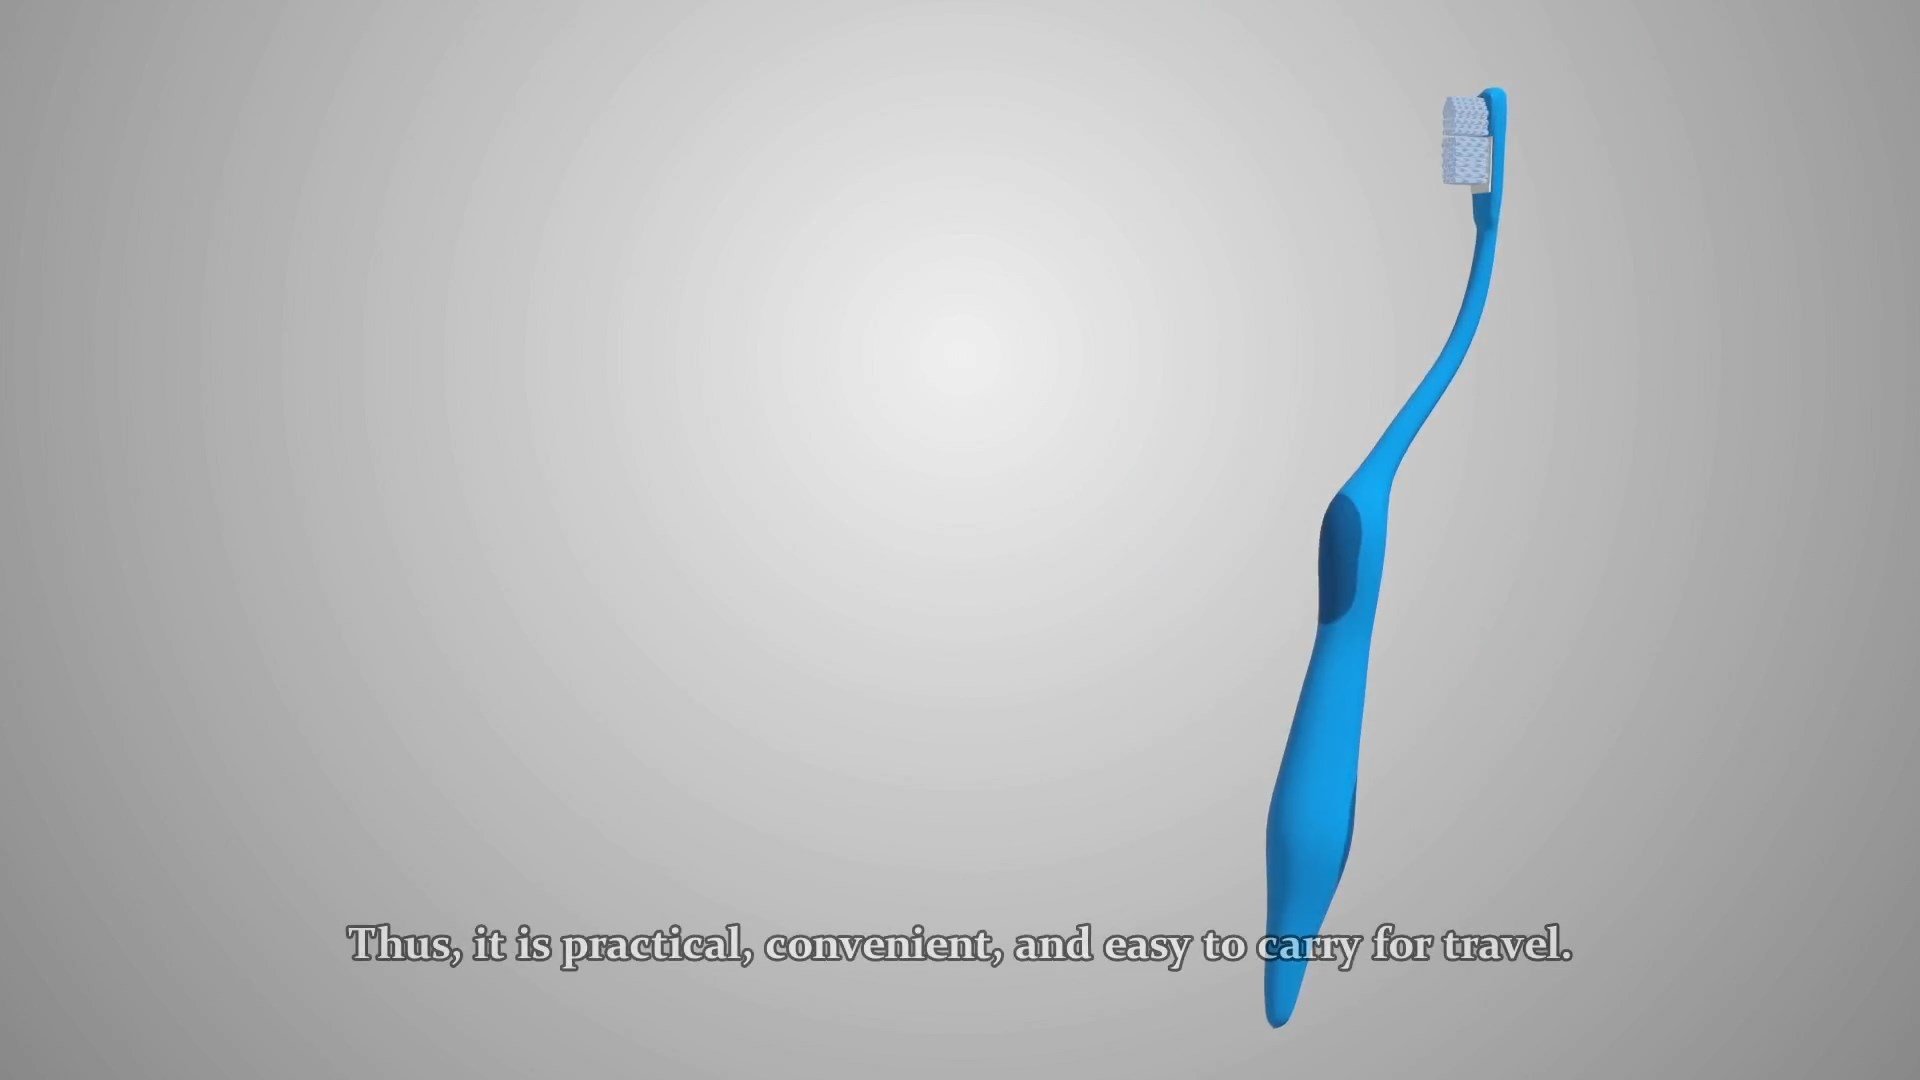 Kendinden Macunlu Diş Fırçası 3D Animasyon Filmi 2 1920x1080 - Kendinden Macunlu Diş Fırçası 3D Animasyon Filmi